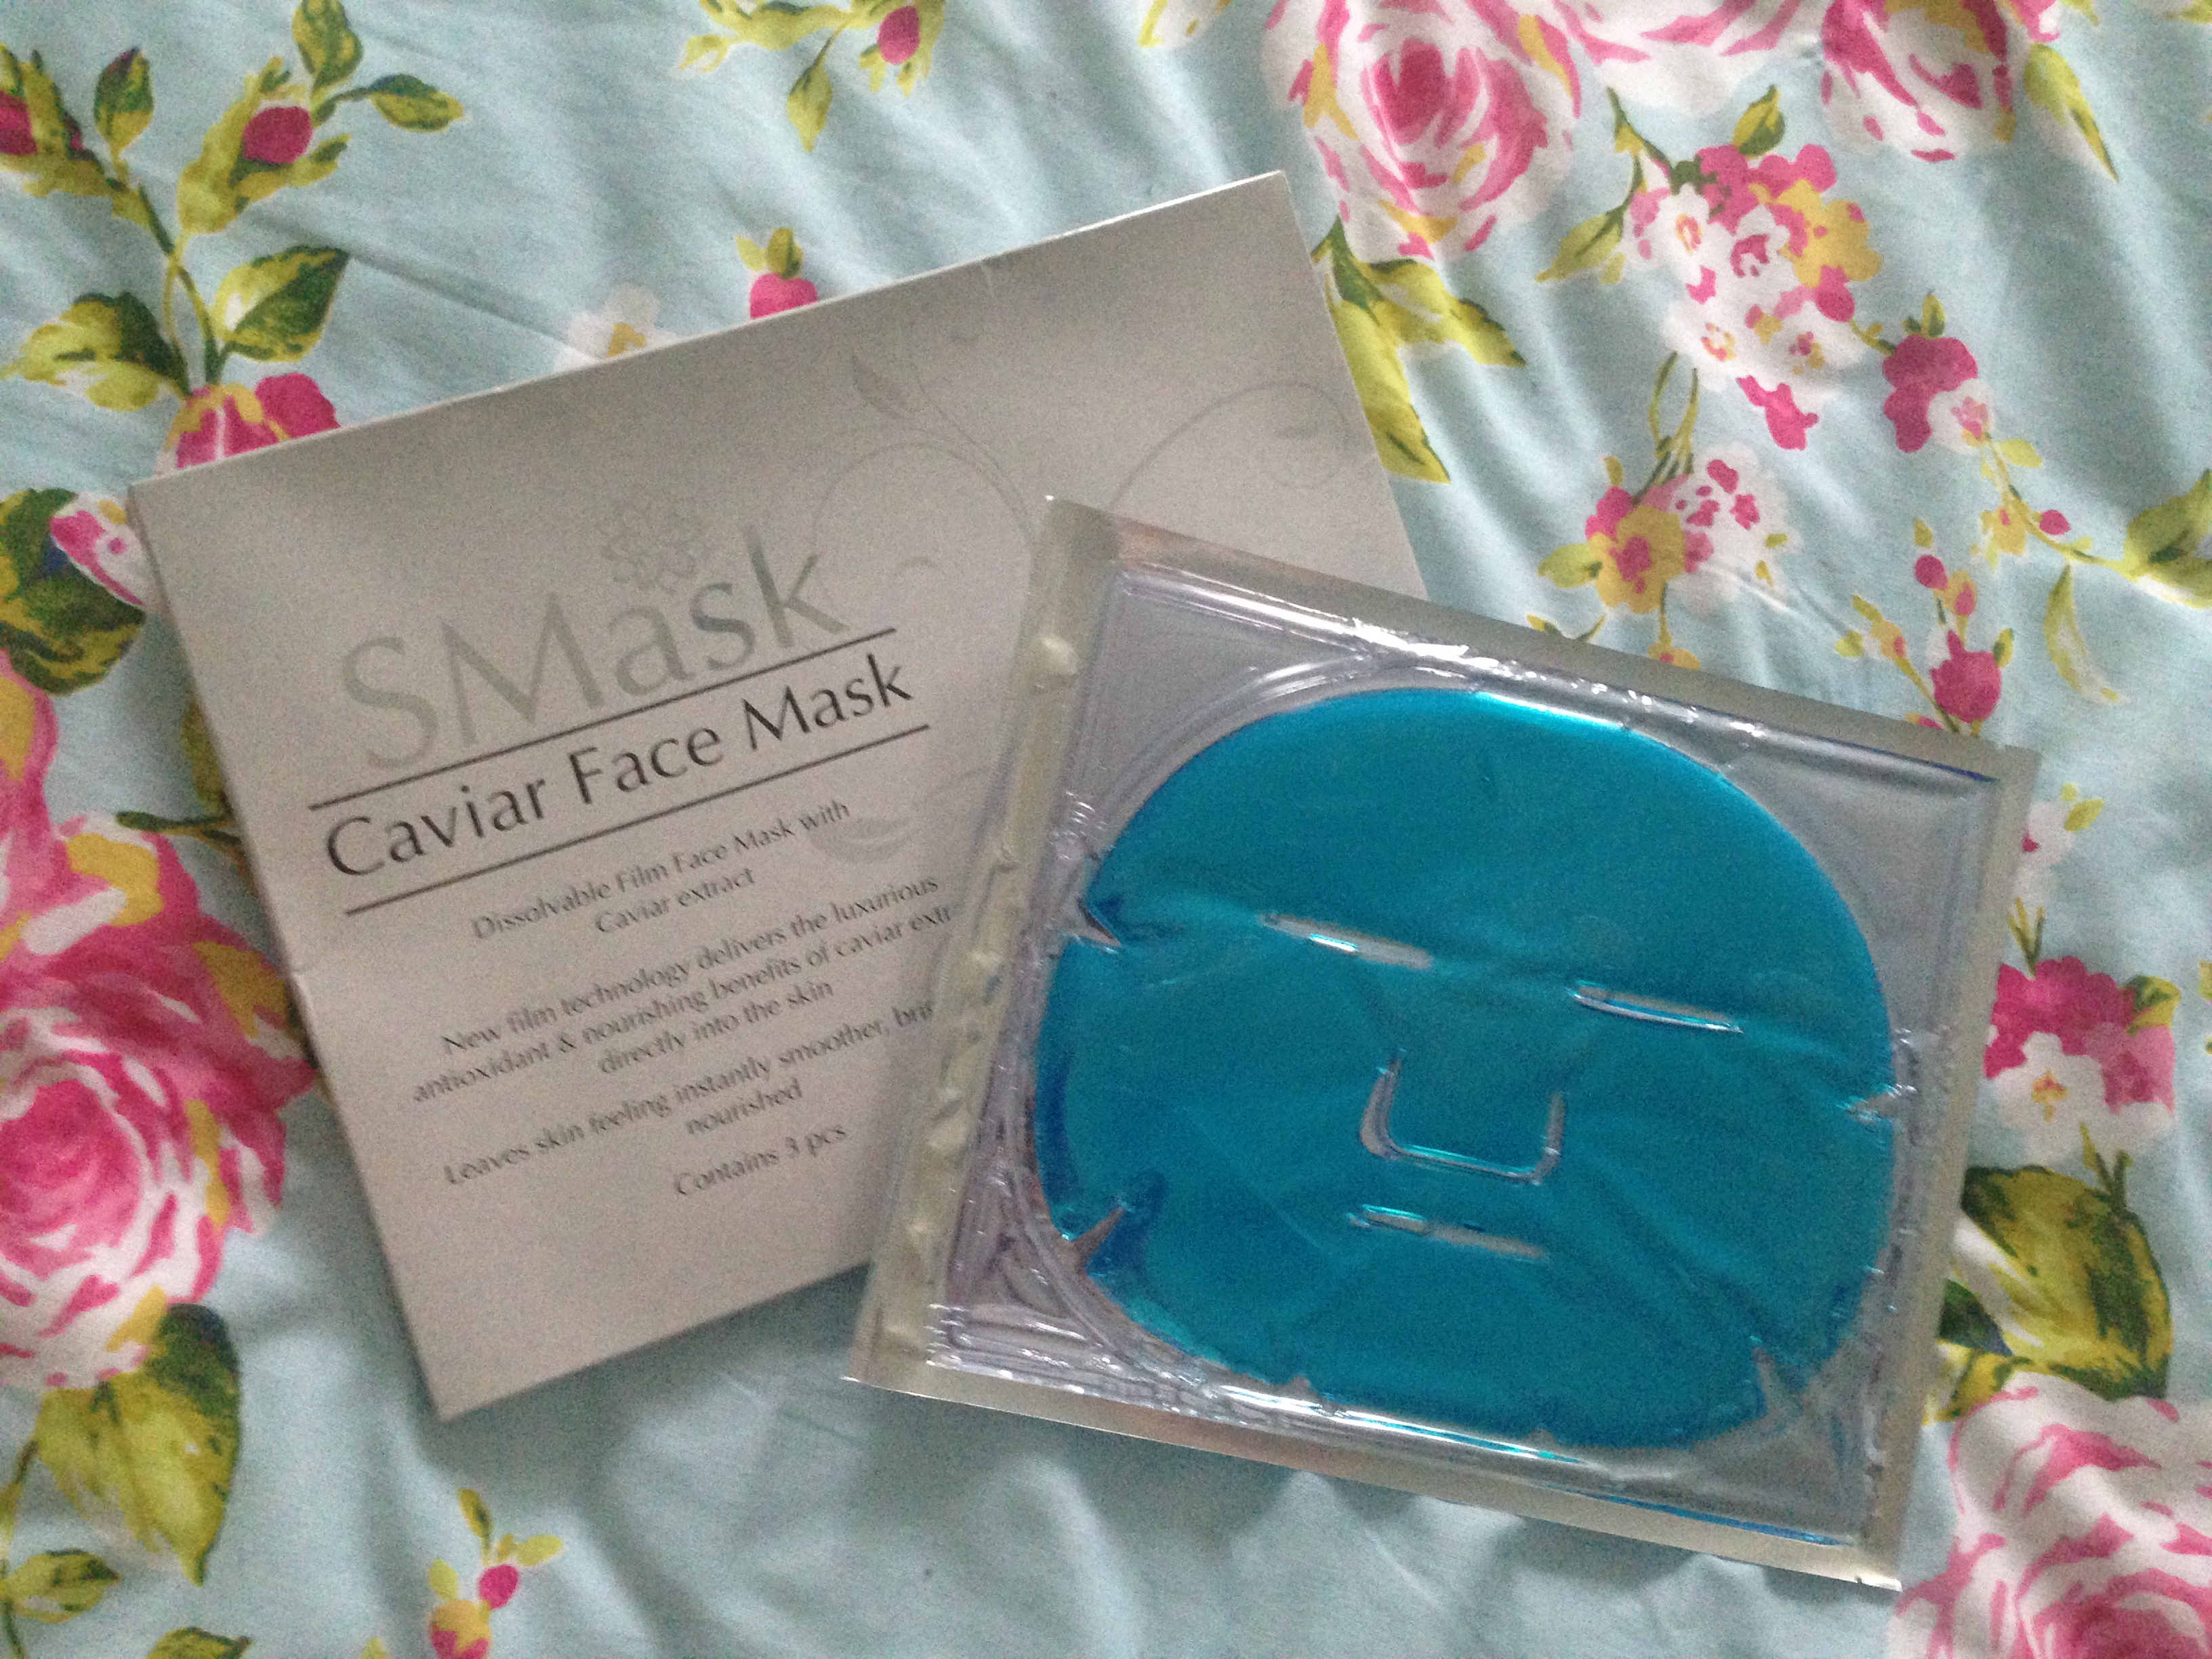 Review: SMask Caviar Face Mask*